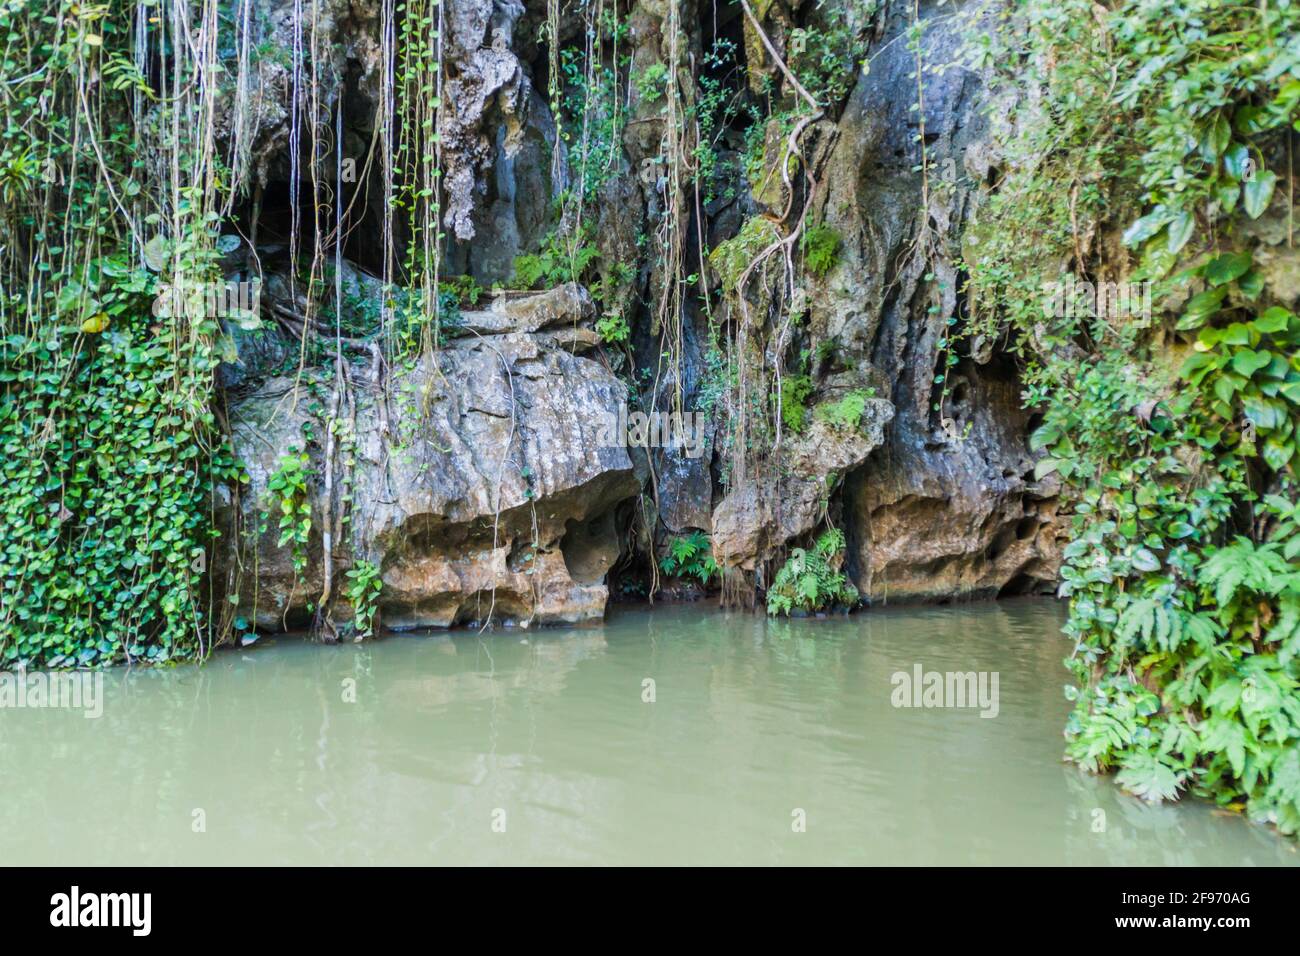 Entrance of Cueva del Indio cave in National Park Vinales, Cuba Stock Photo